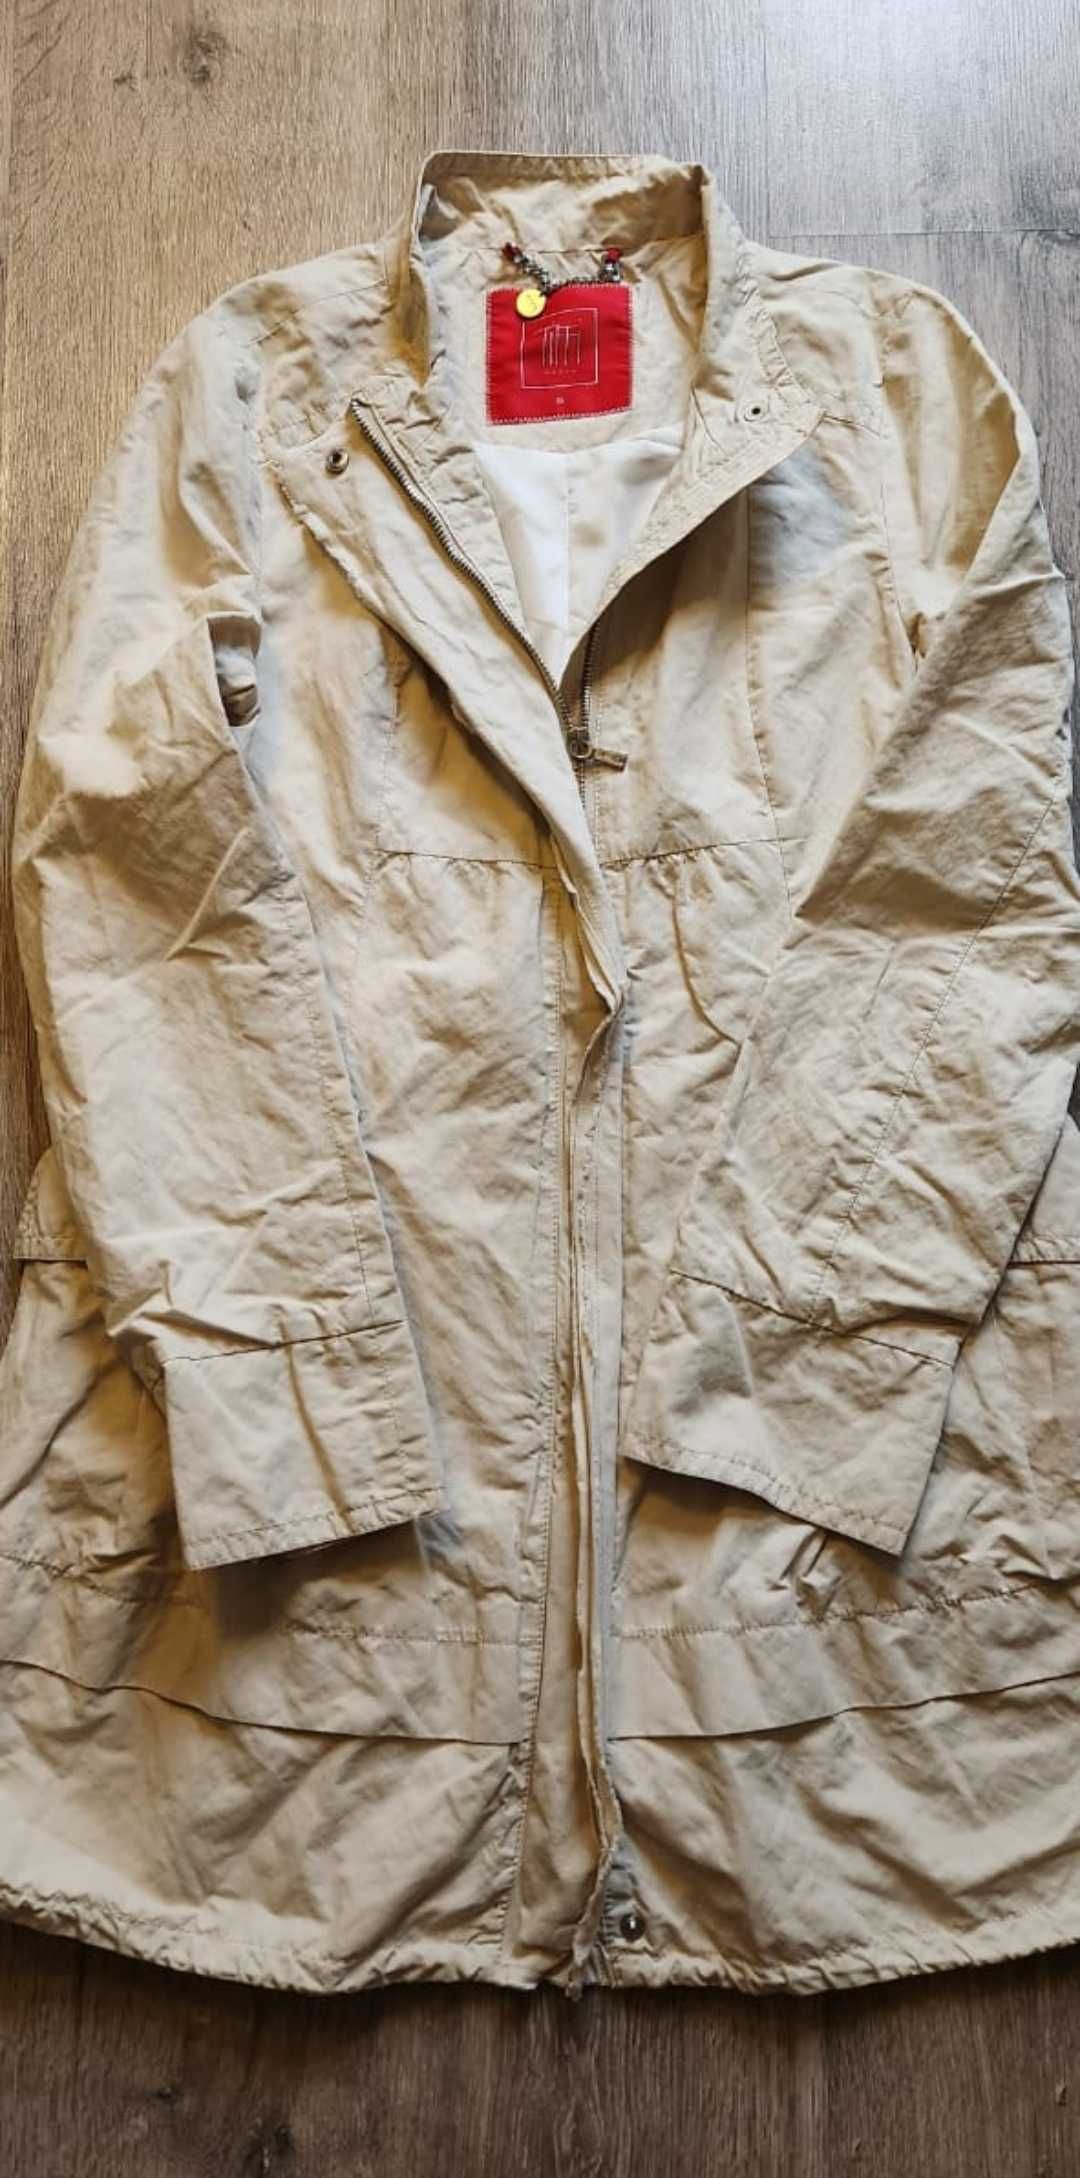 Tiffi klasyczny piękny damski płaszcz z podszewką, rozmiar S/ 36